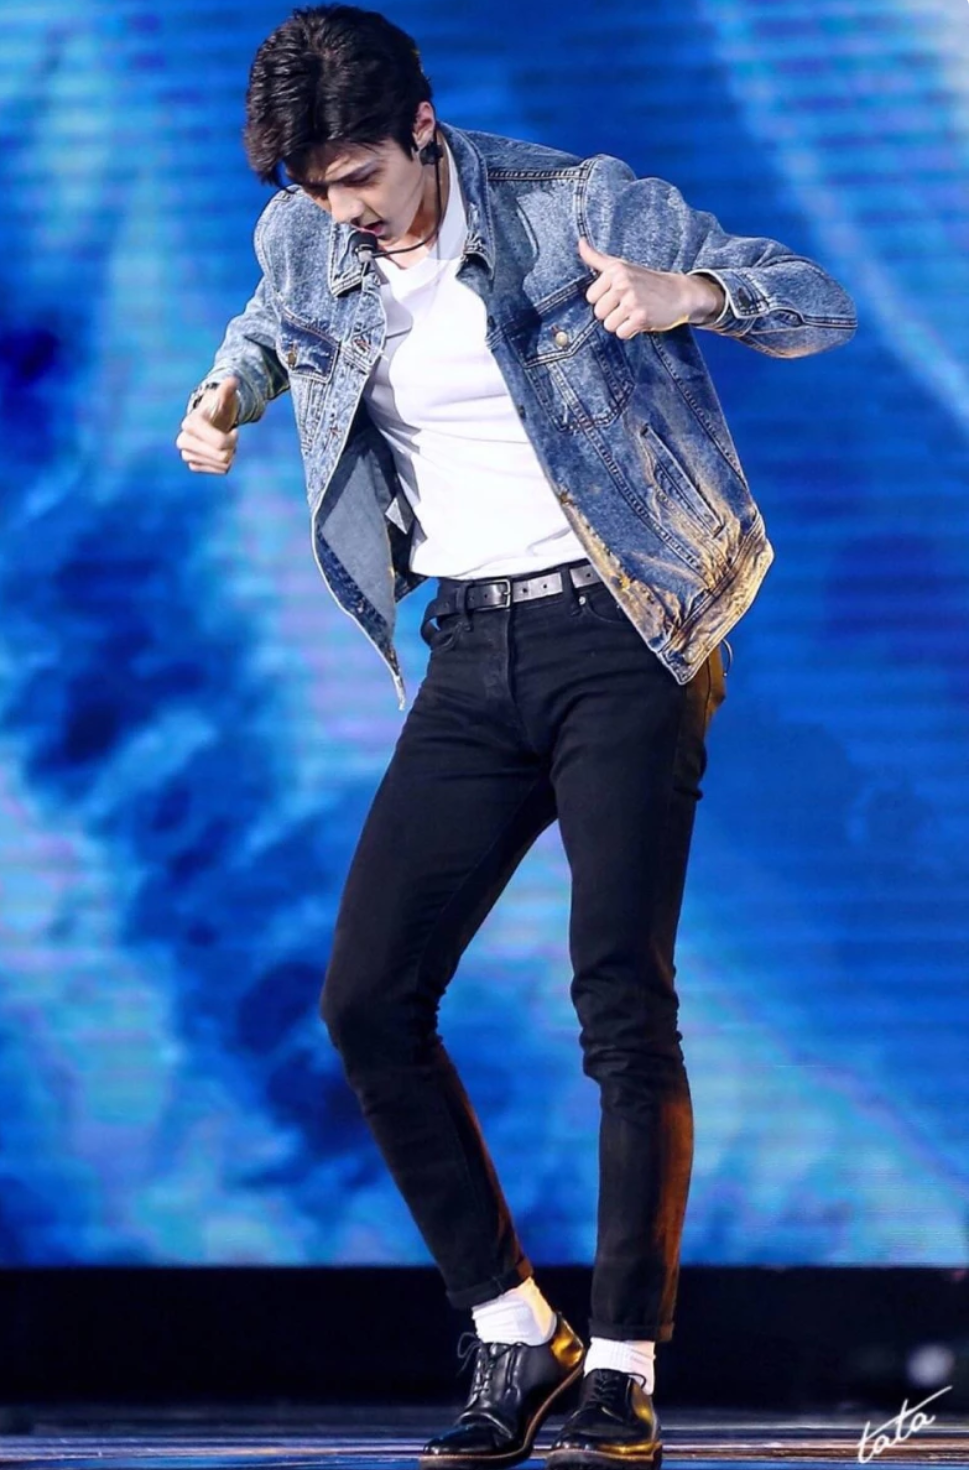 吴世勋身穿牛仔衣显得身高腿长,你能猜出他跳的哪个舞蹈吗